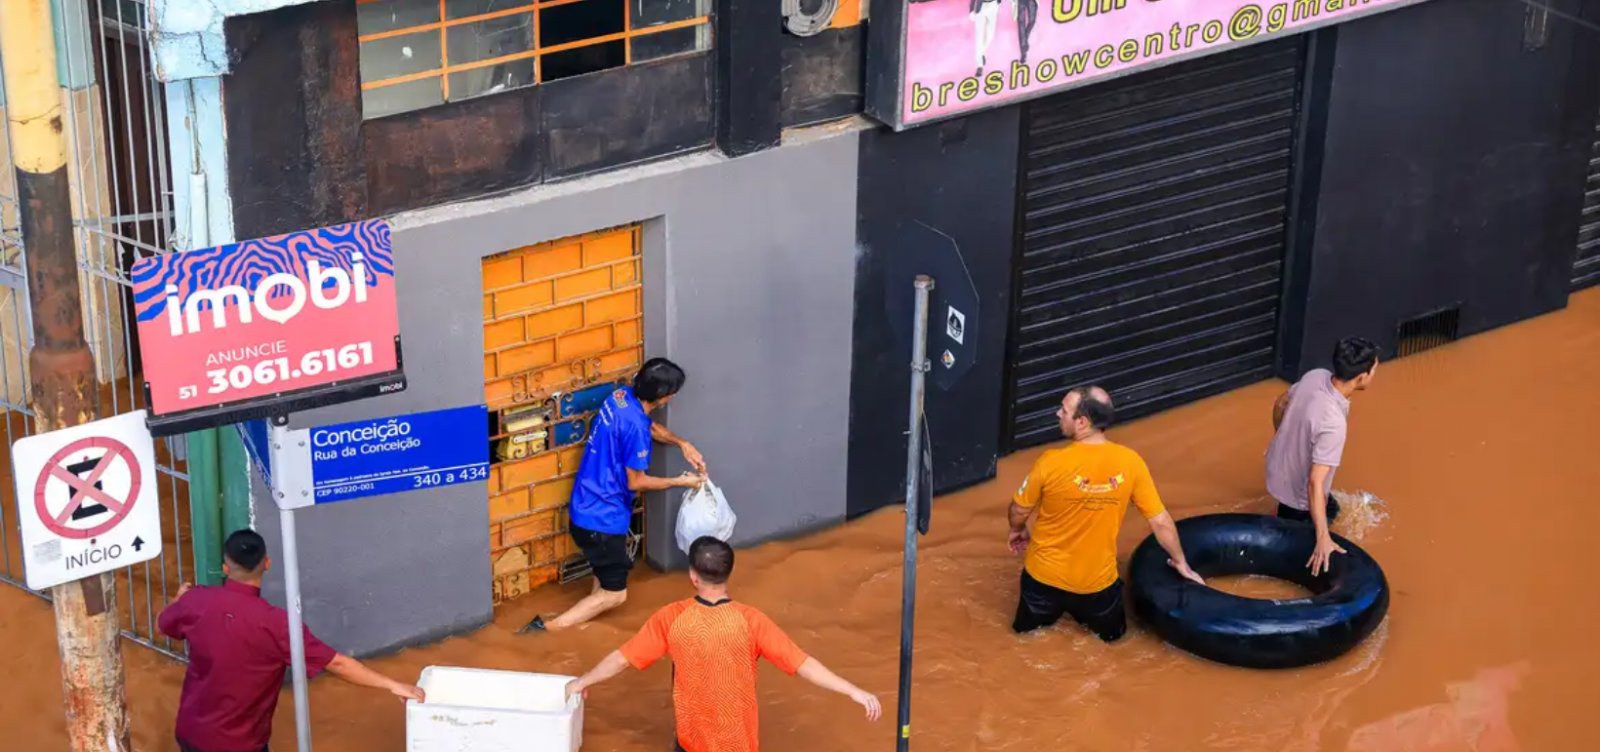 Prefeitura de Porto Alegre suspende operação de resgate com barcos devido às fortes chuvas na região